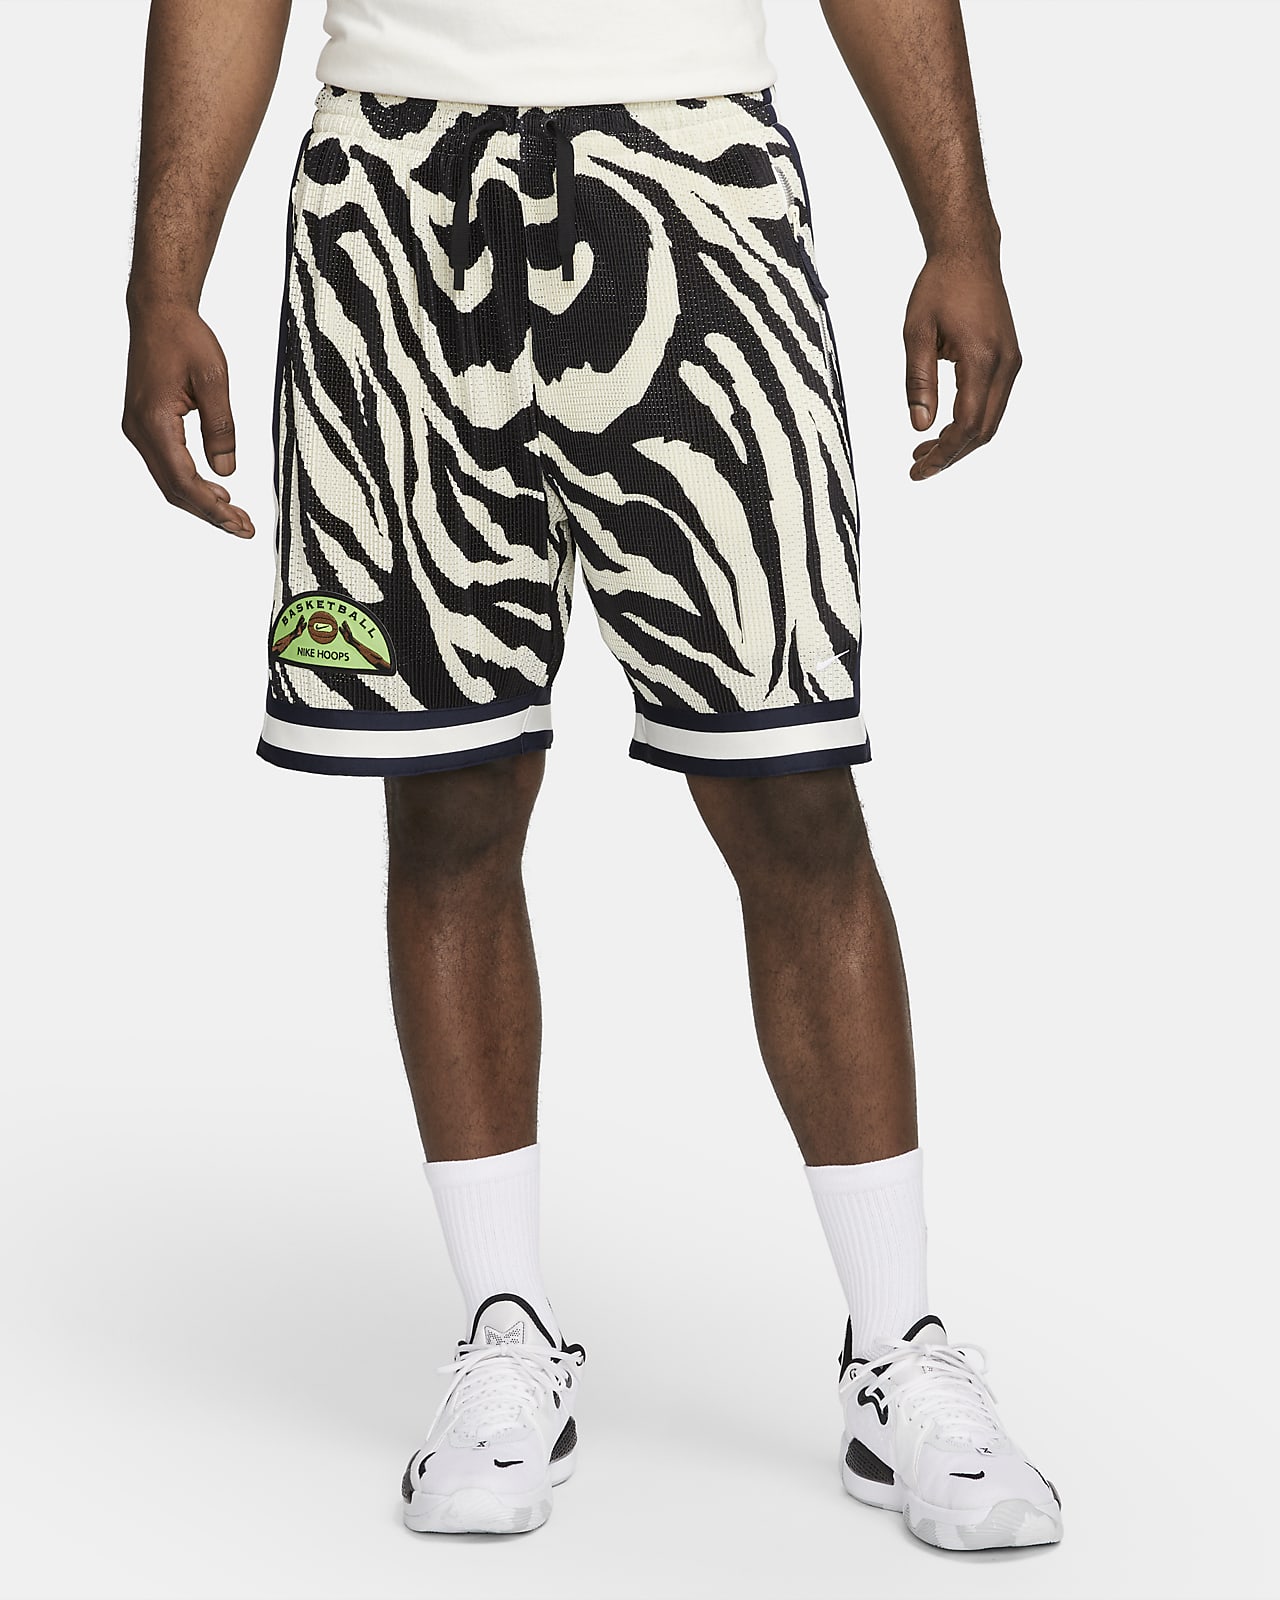 Nike Dri-FIT Men's Basketball Shorts. Nike.com